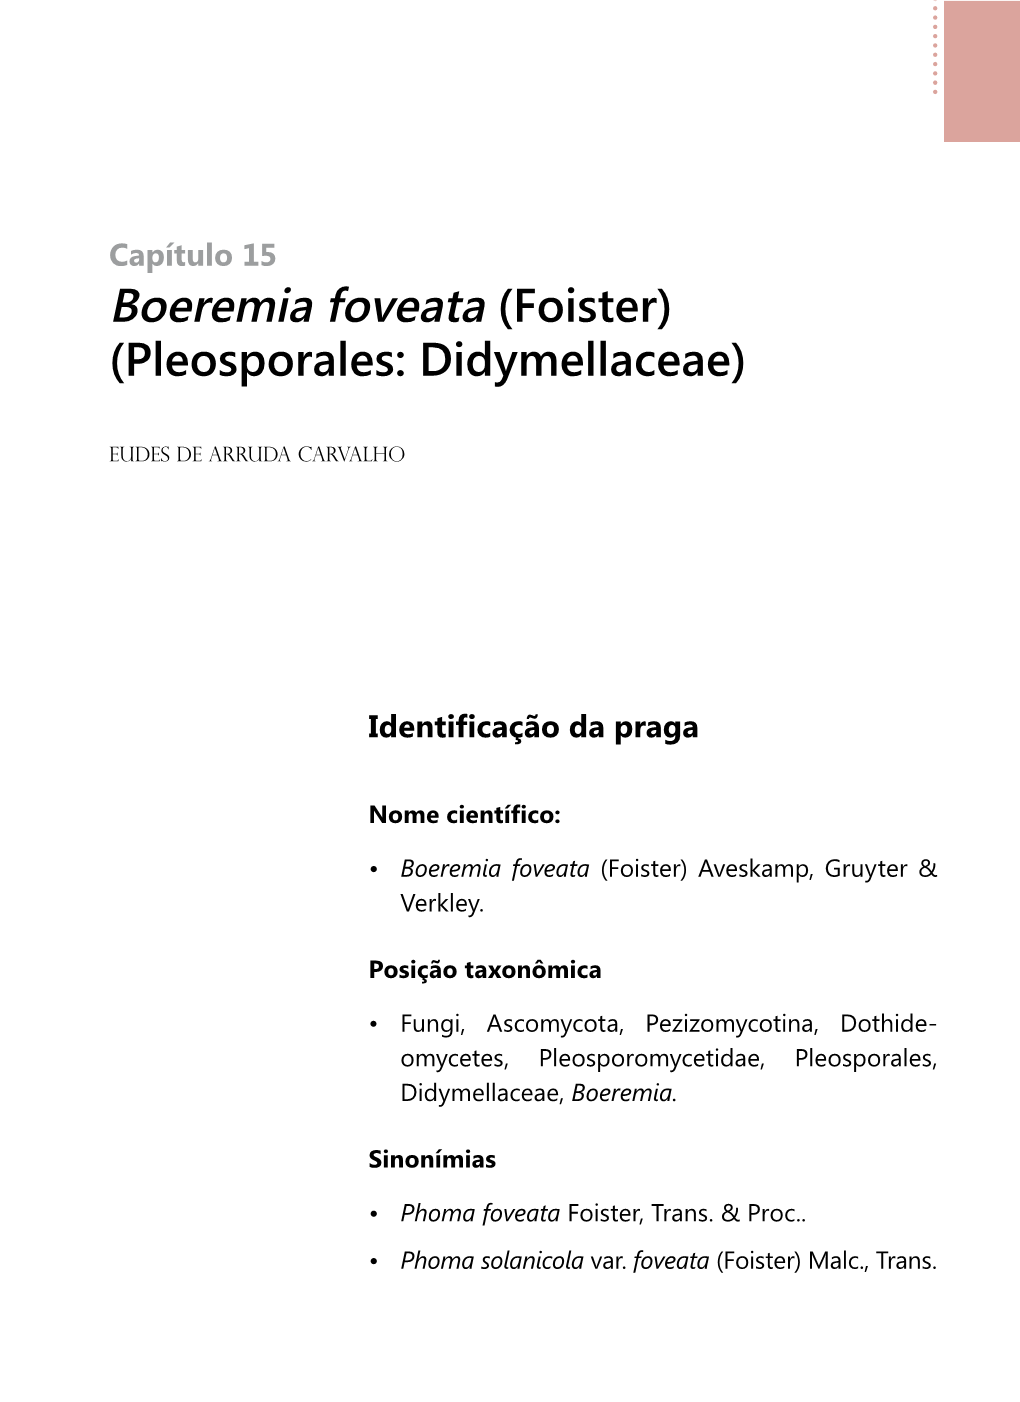 Boeremia Foveata (Foister) (Pleosporales: Didymellaceae)